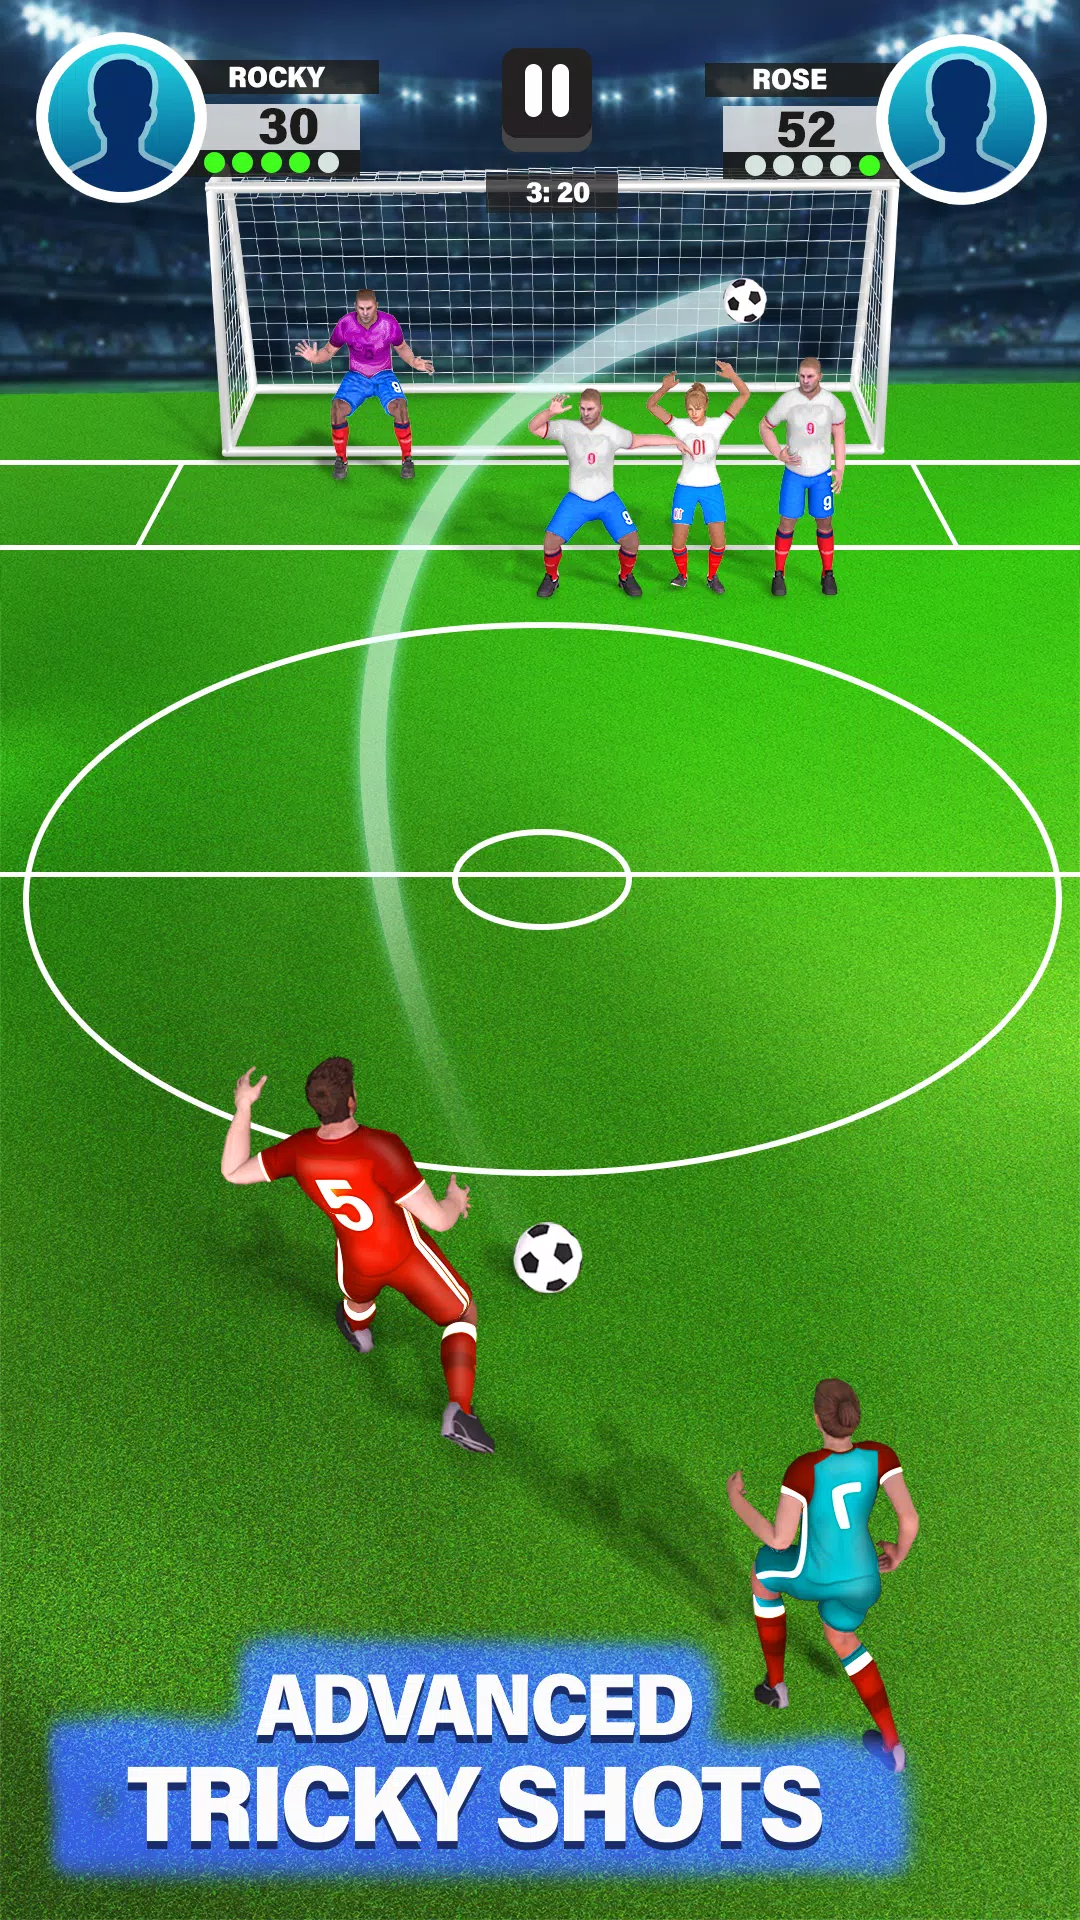 Copa do mundo: Melhores Jogos de Futebol Offline (Android e iOS) - Mobile  Gamer